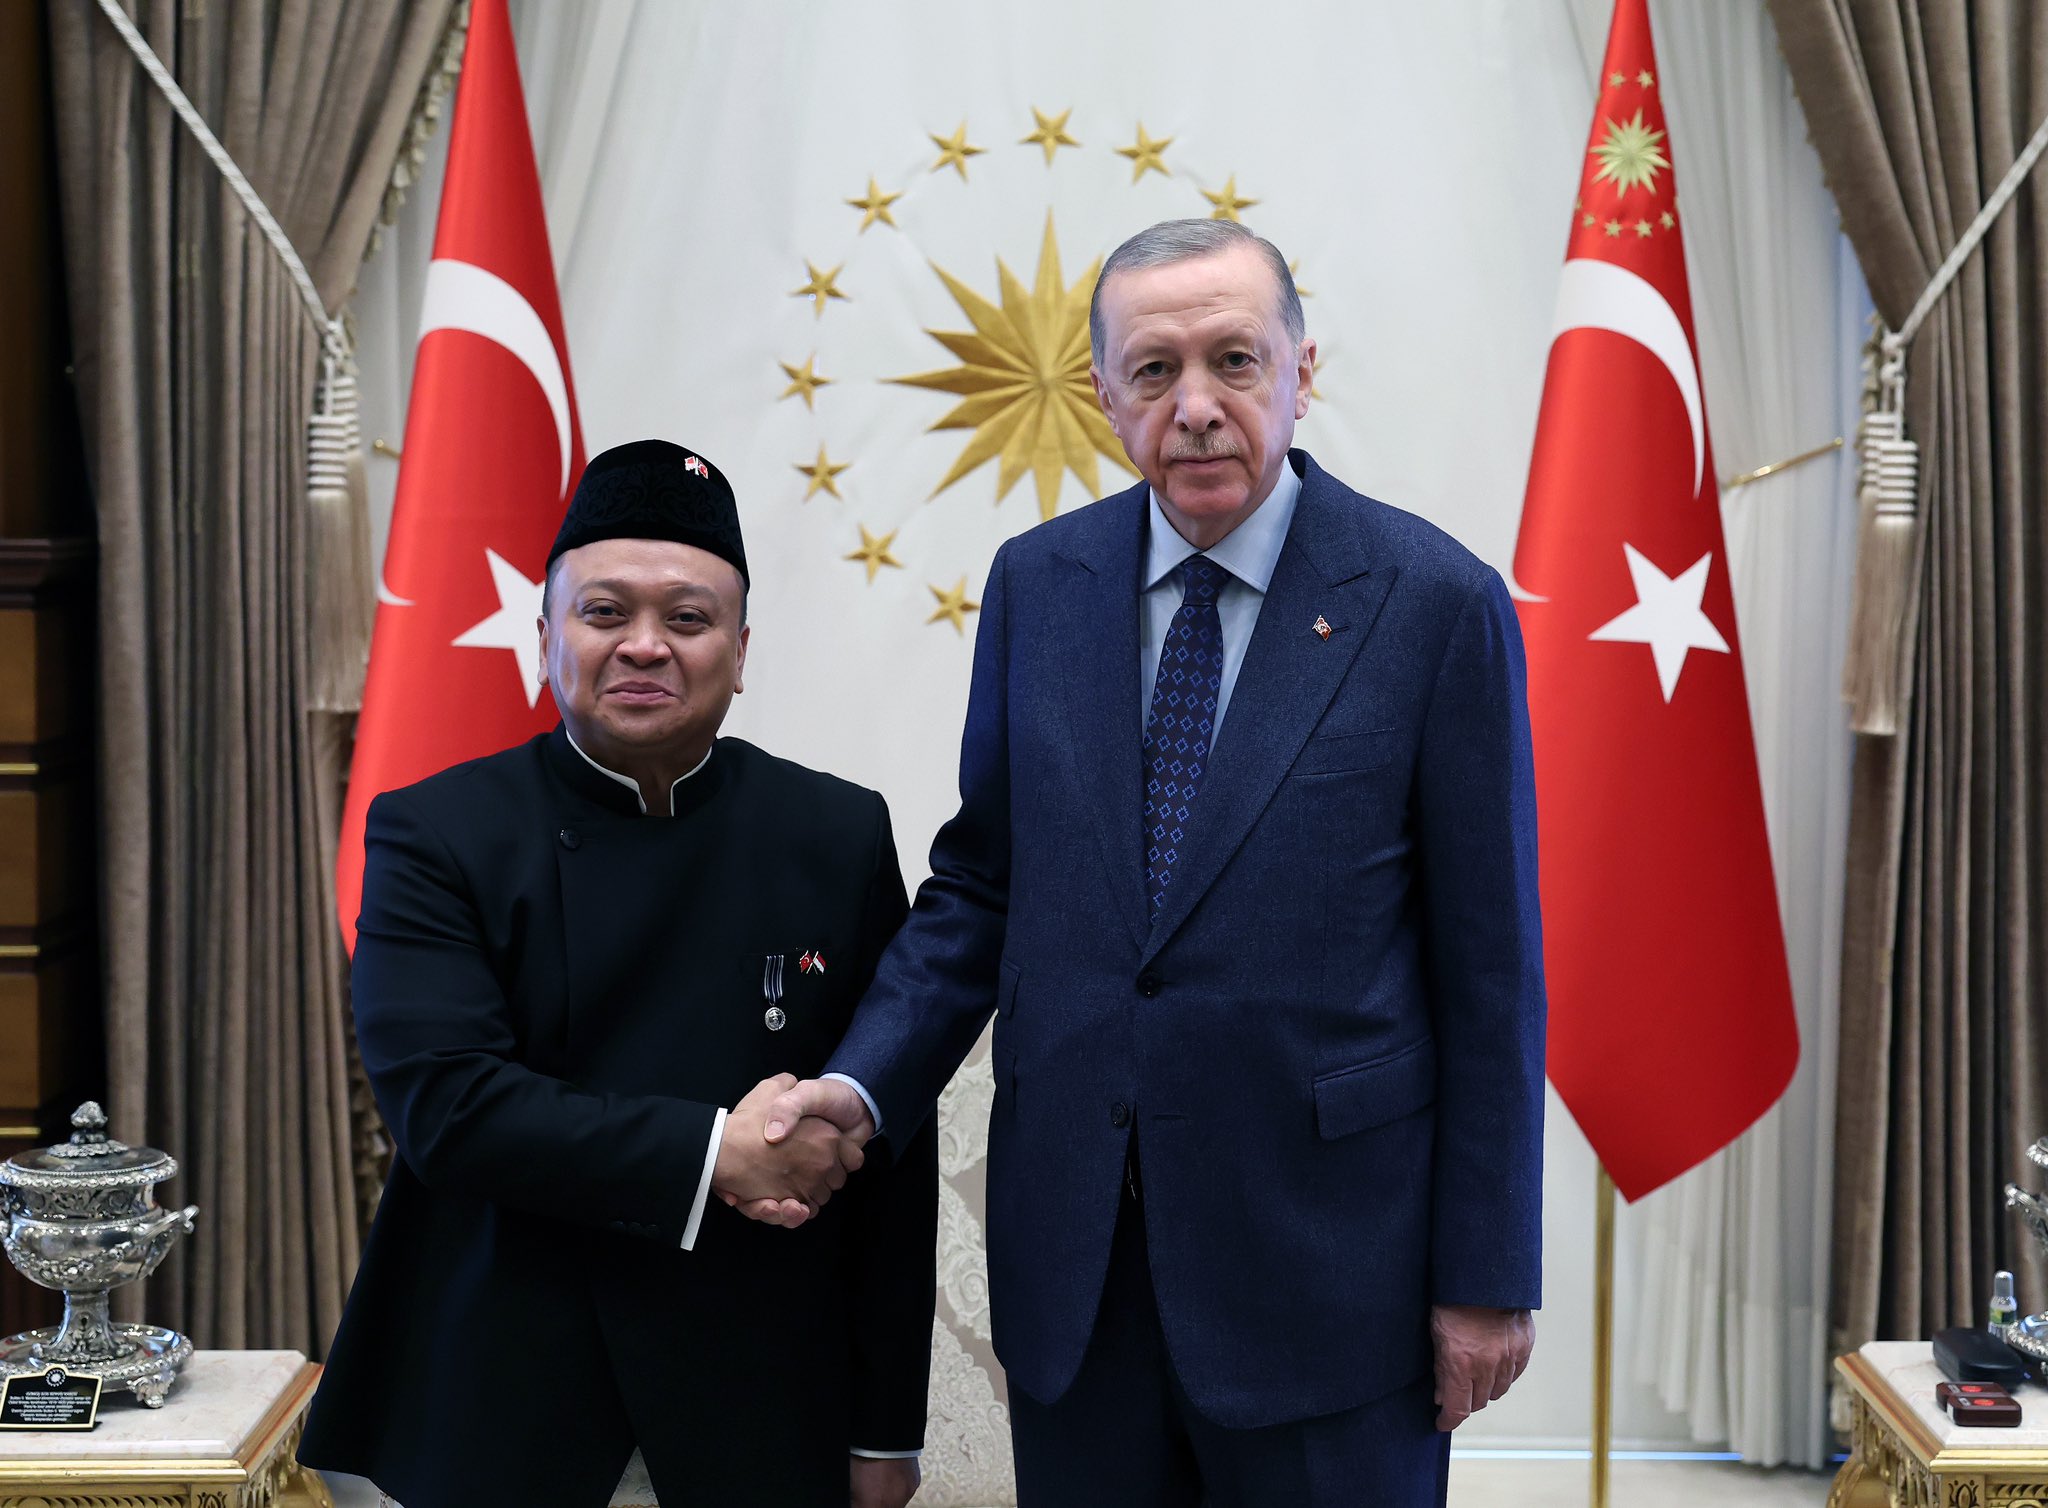 The President of Turkiye